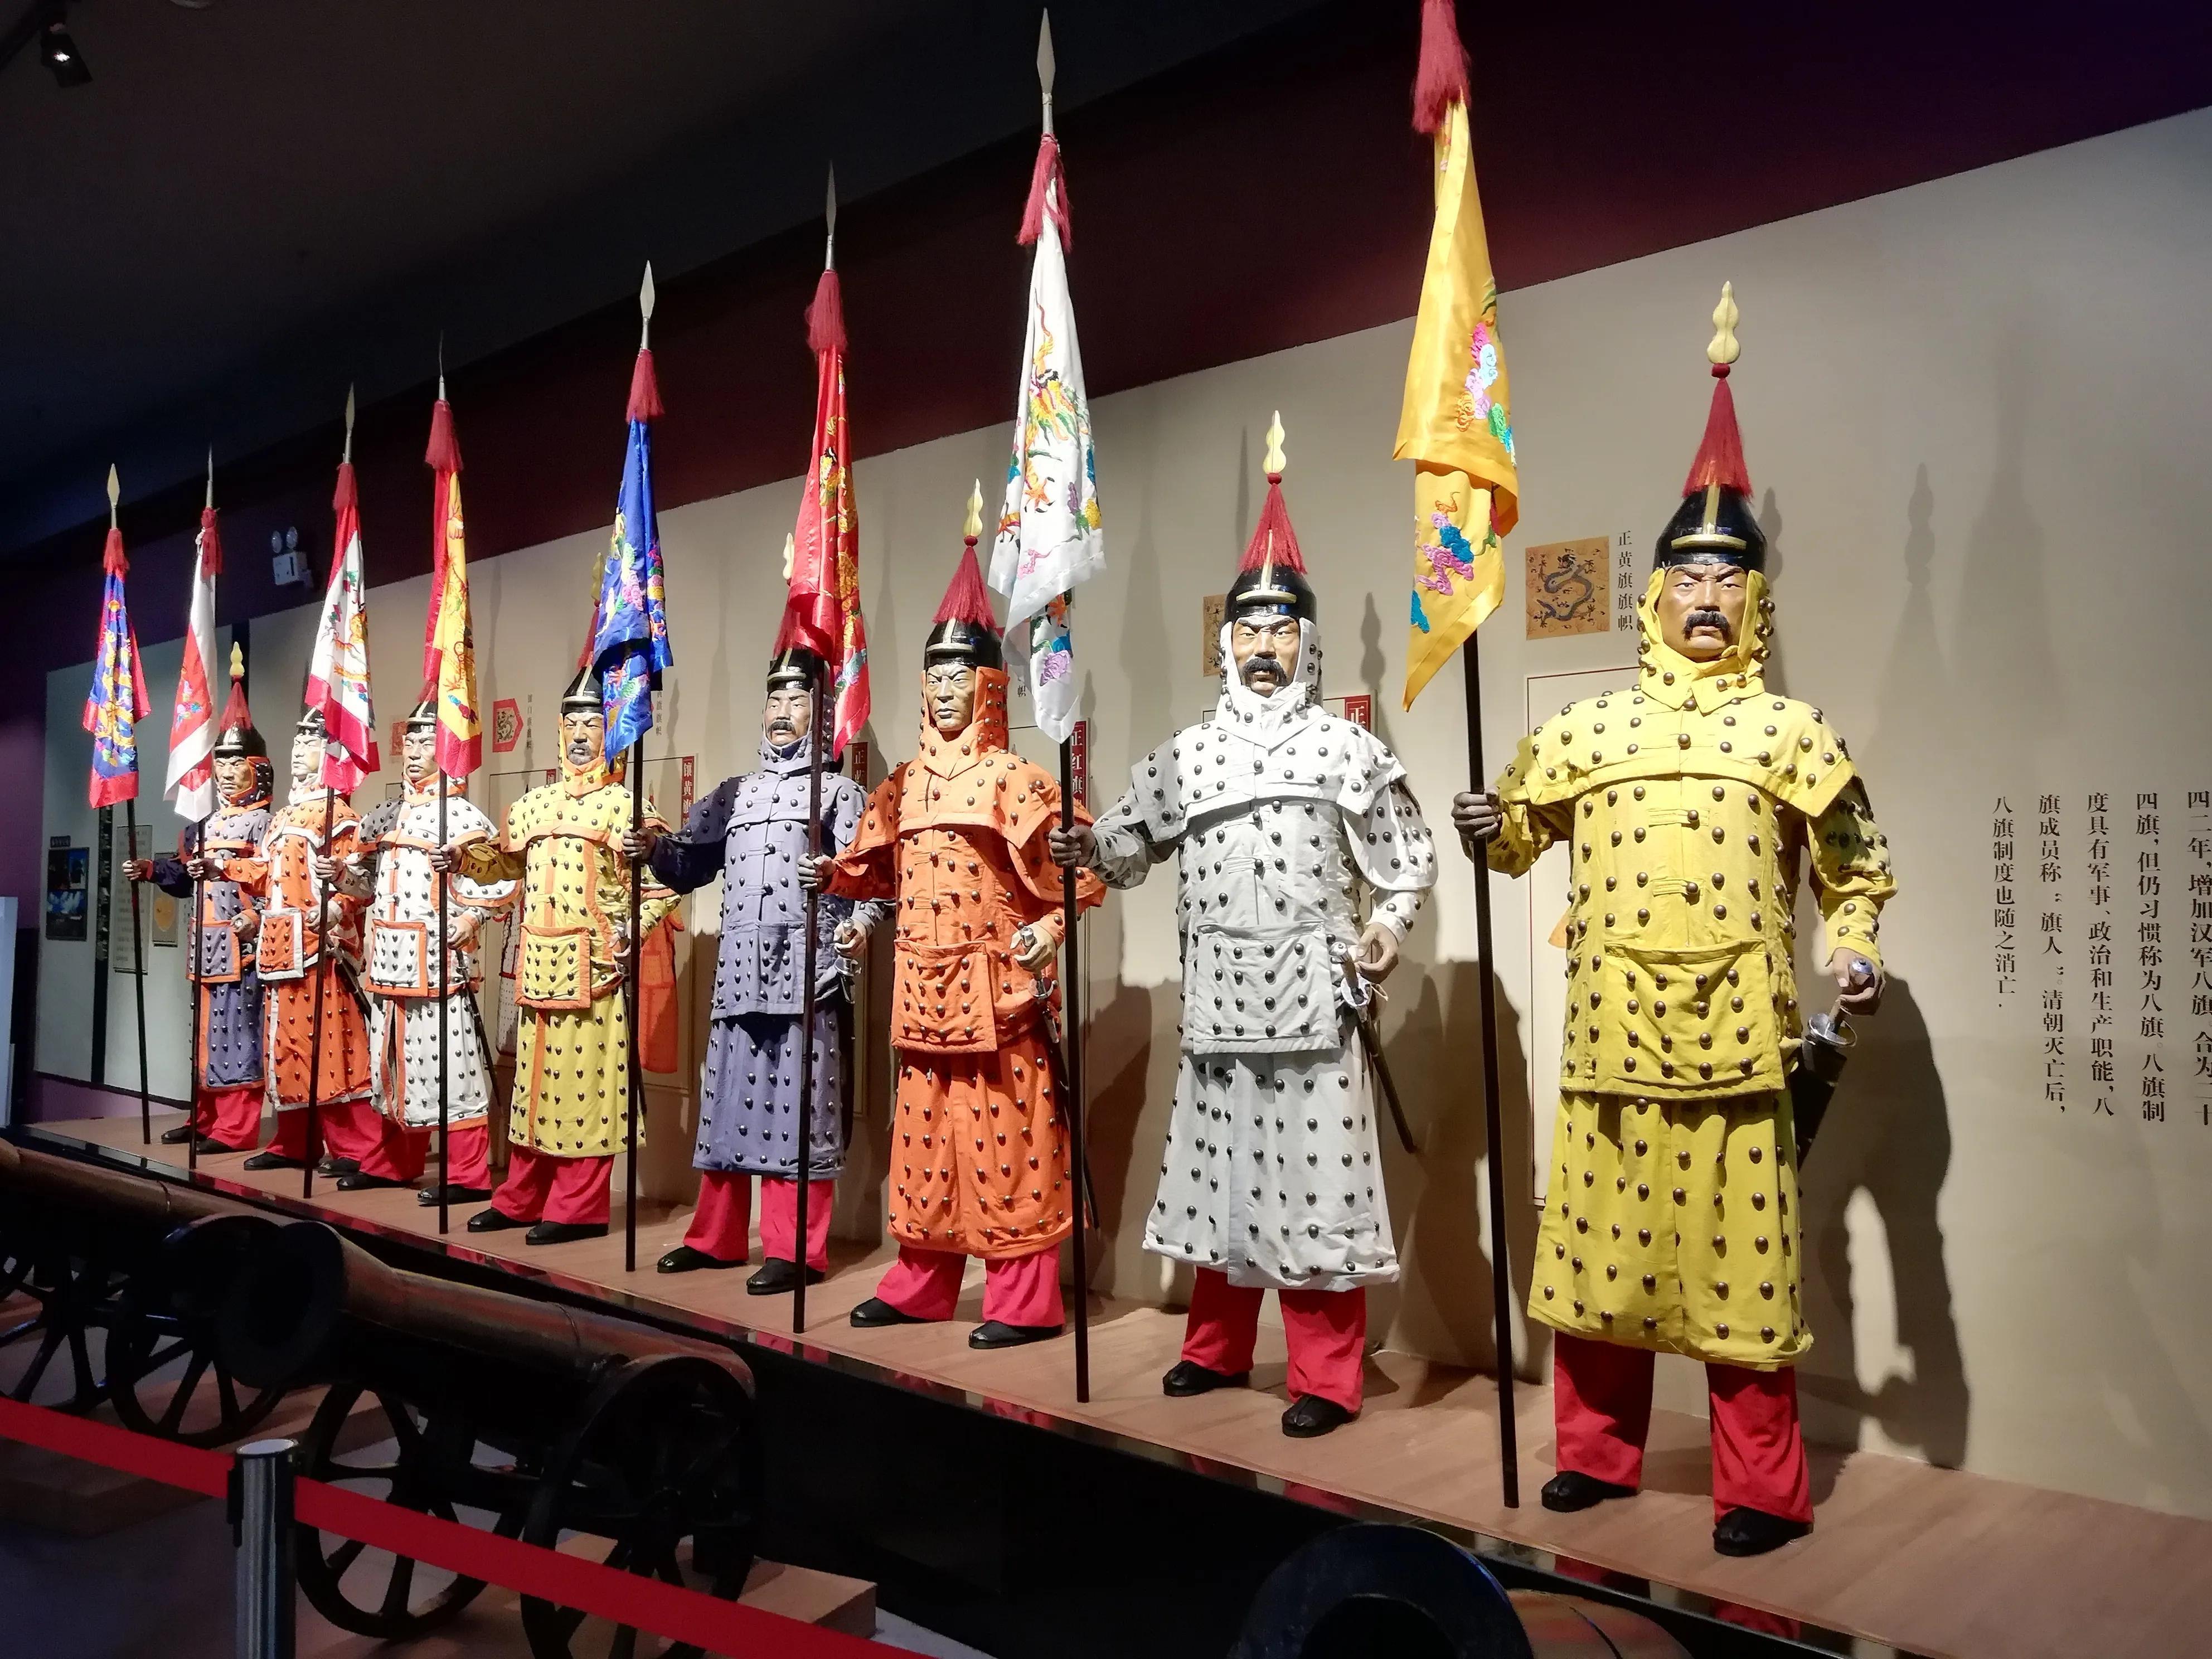 吉林市满族文化博物馆图片